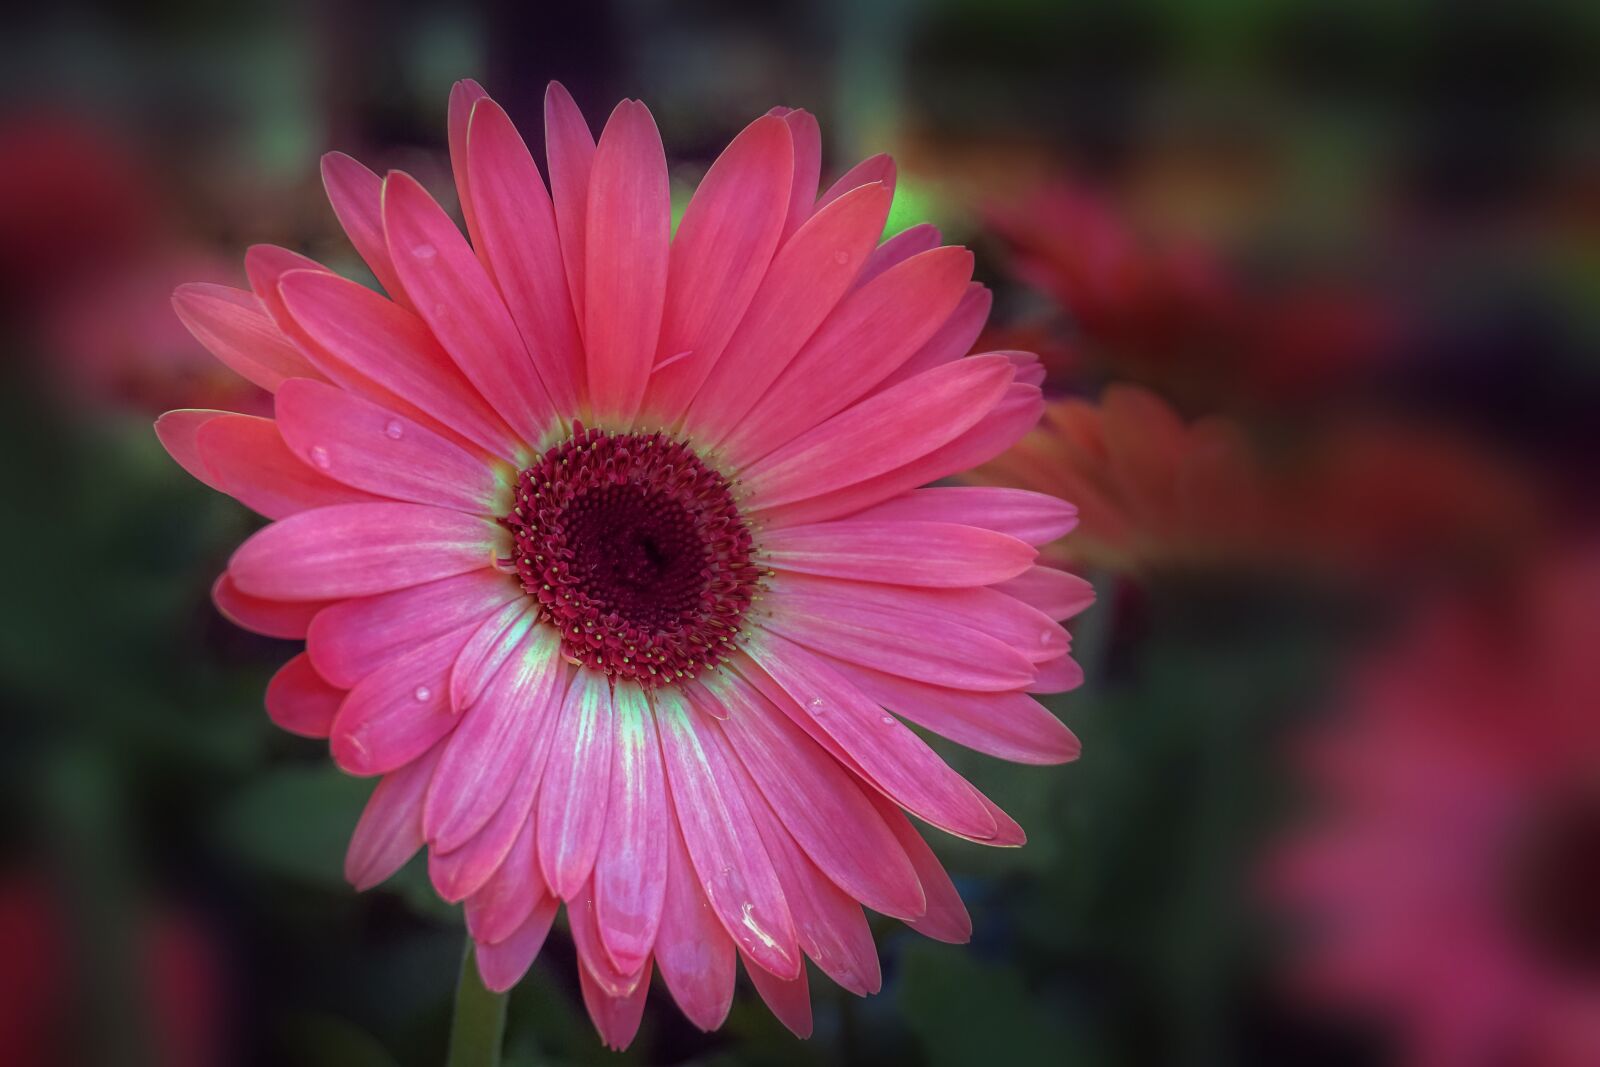 Sony a6300 sample photo. Flower, daisy, gerber photography